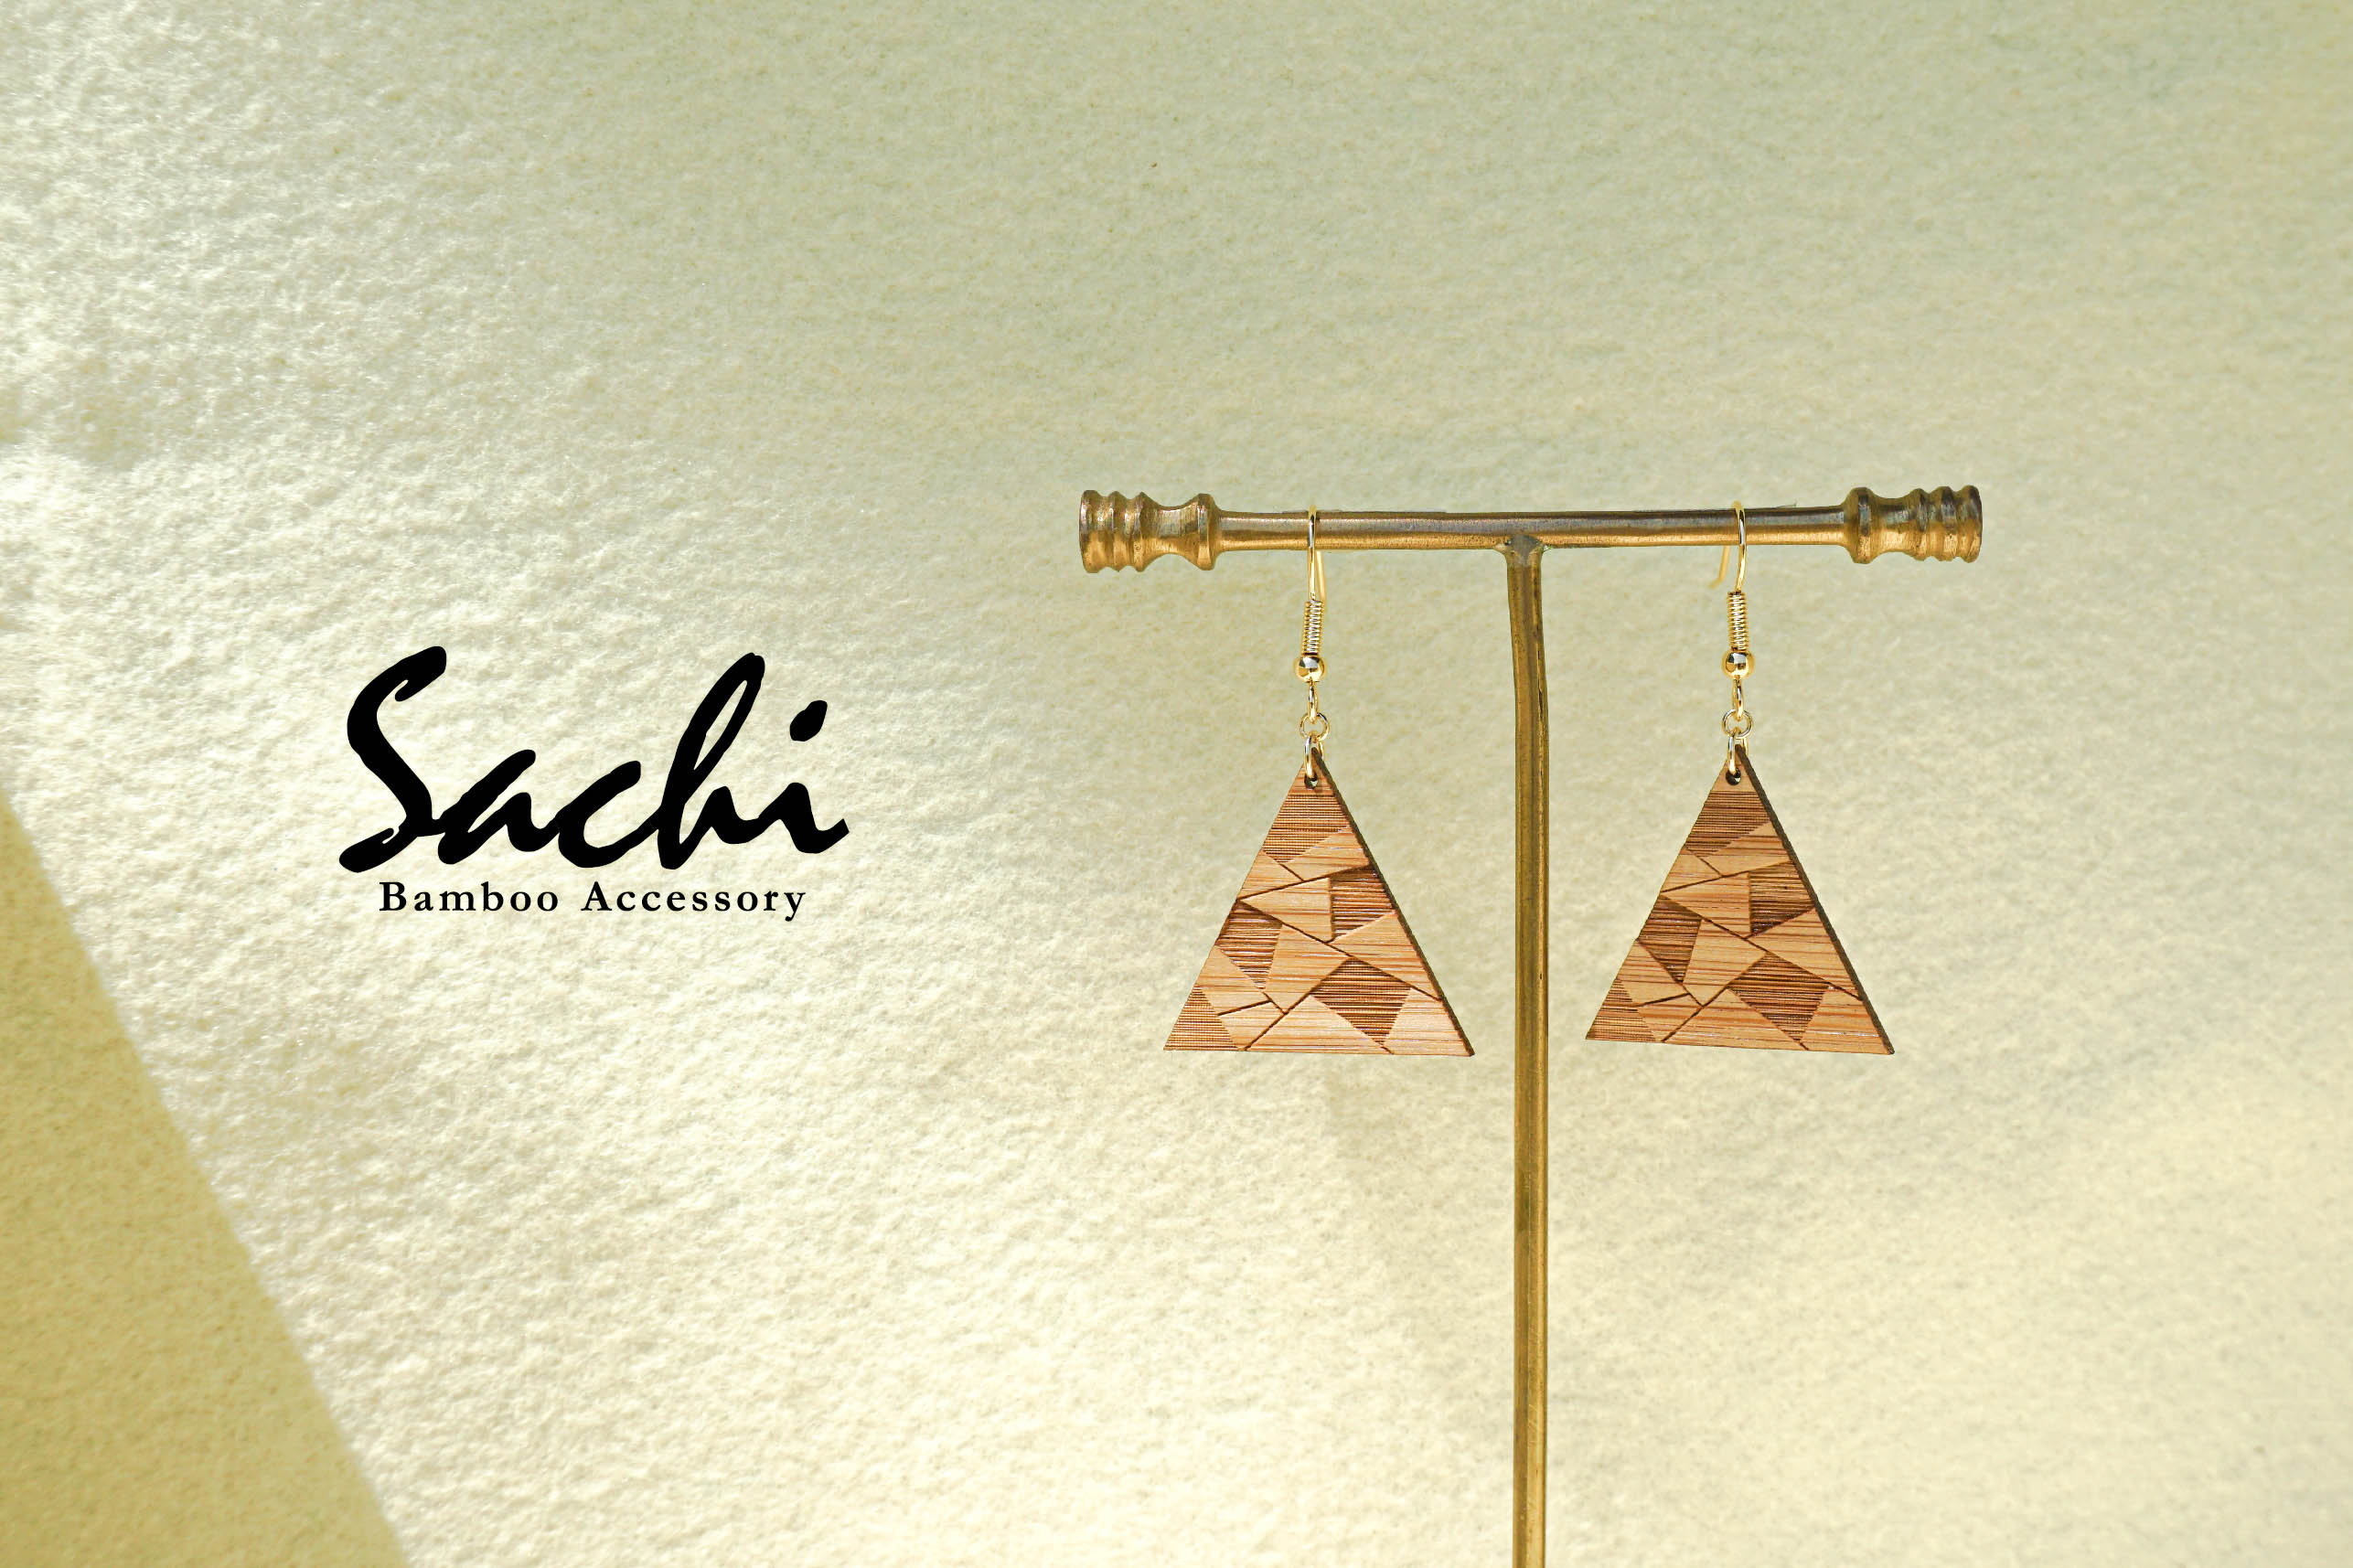  Bamboo Accessory 「Sachi」シリーズはじめました